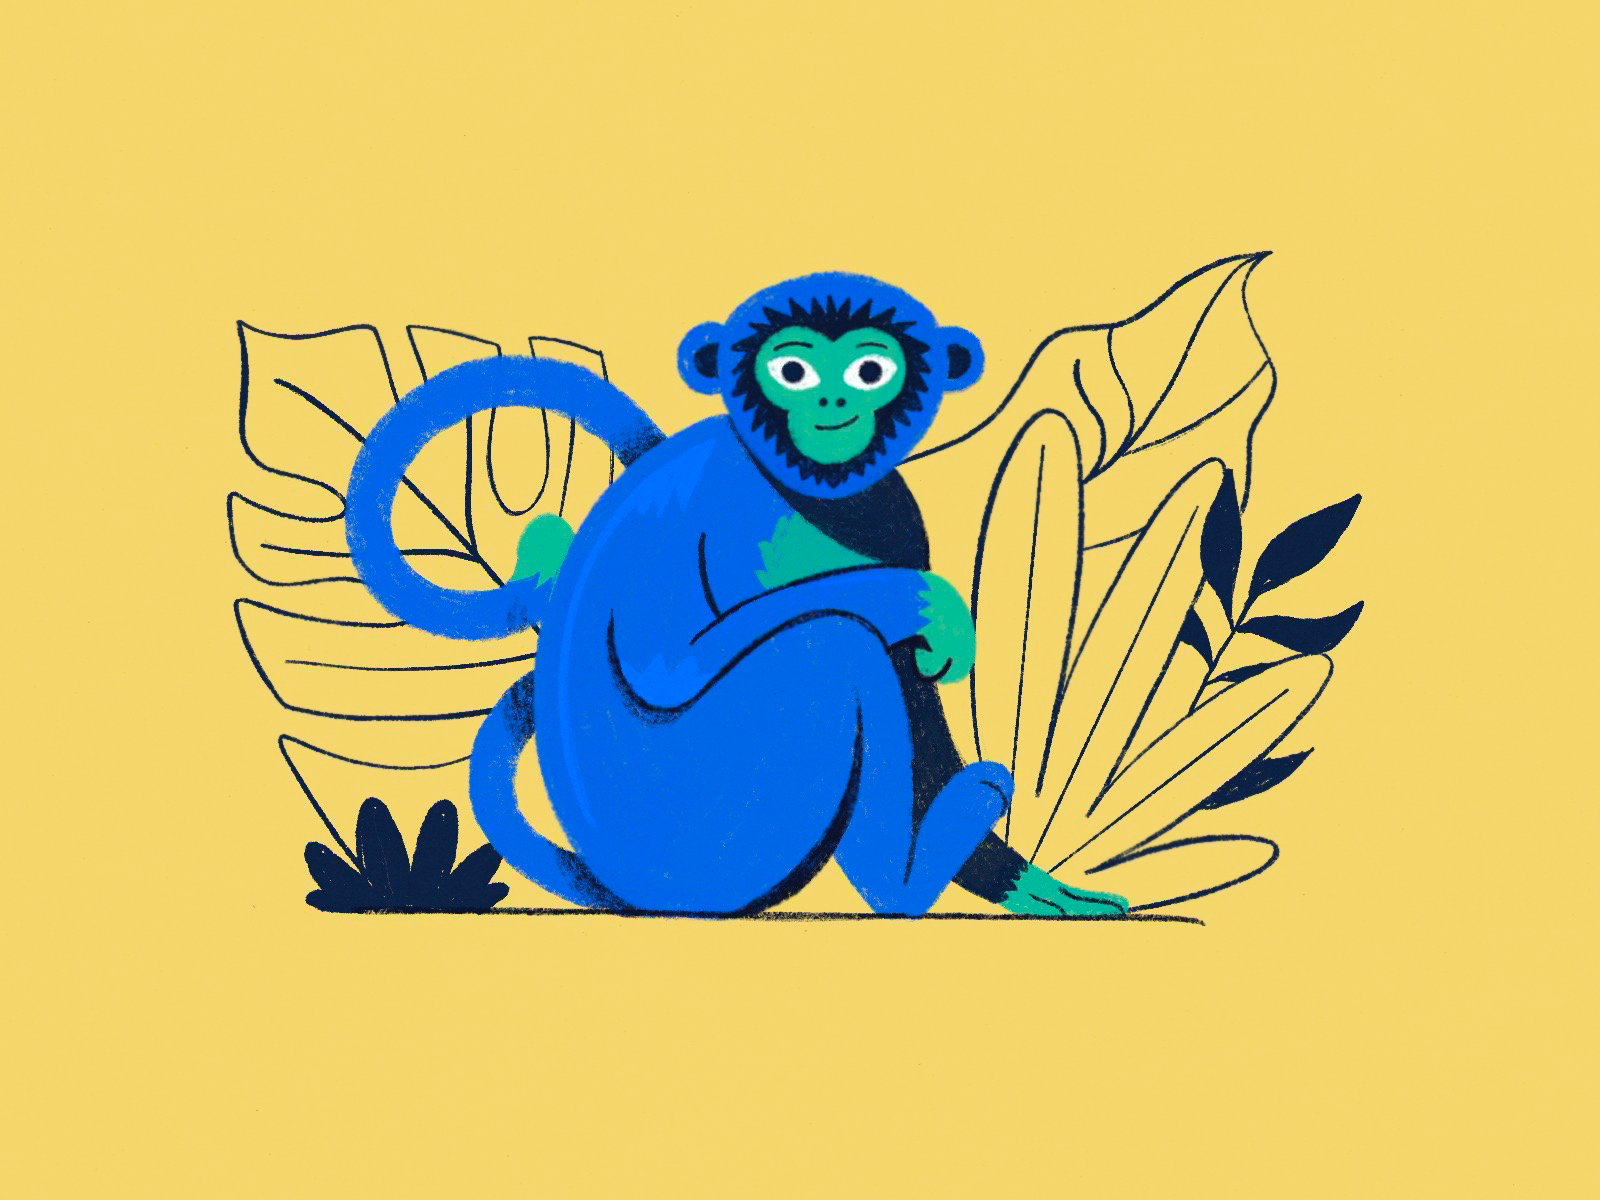 Blue monkey by Daria Surkova on Dribbble